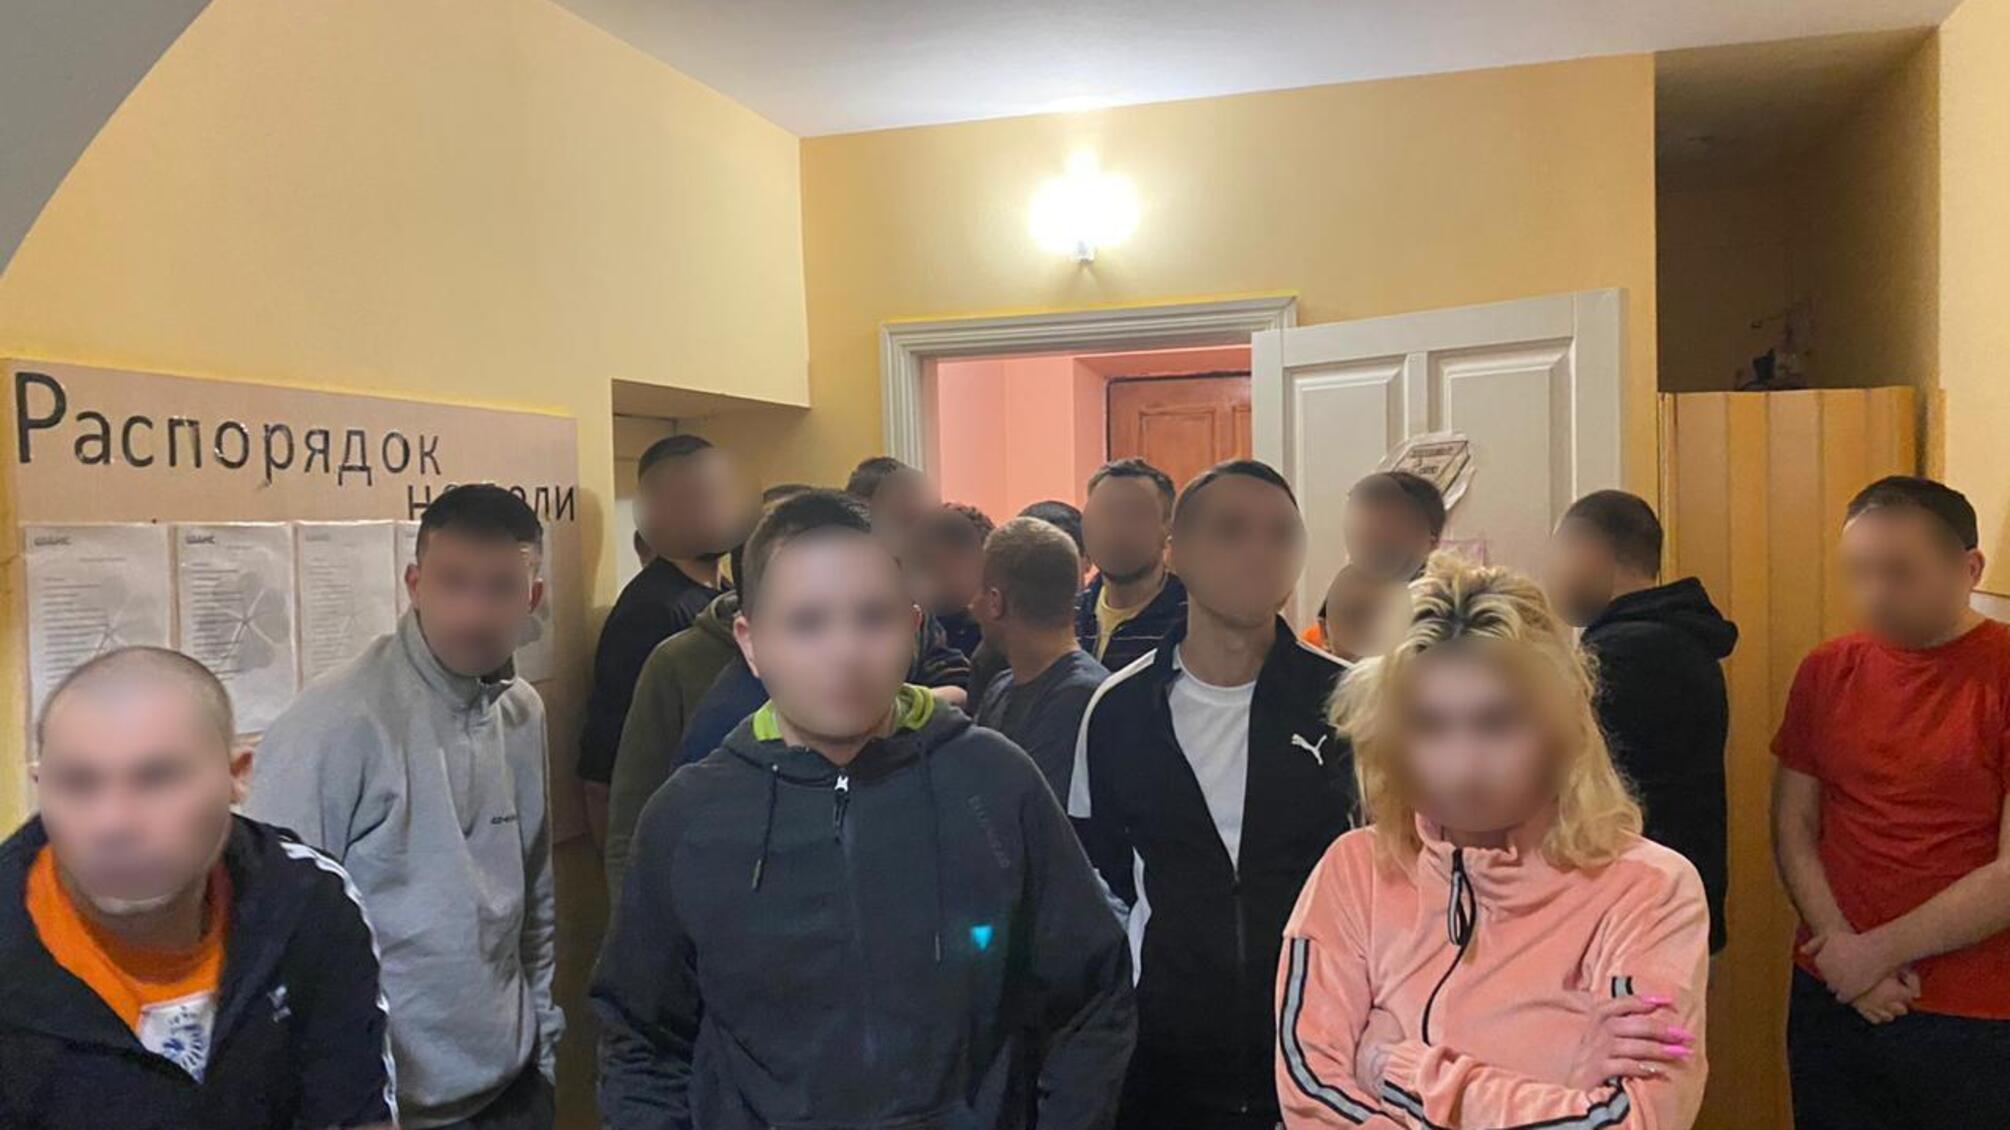 Поліцейські Київщини викрили групу осіб, які незаконно утримували людей у псевдореабілітаційному центрі